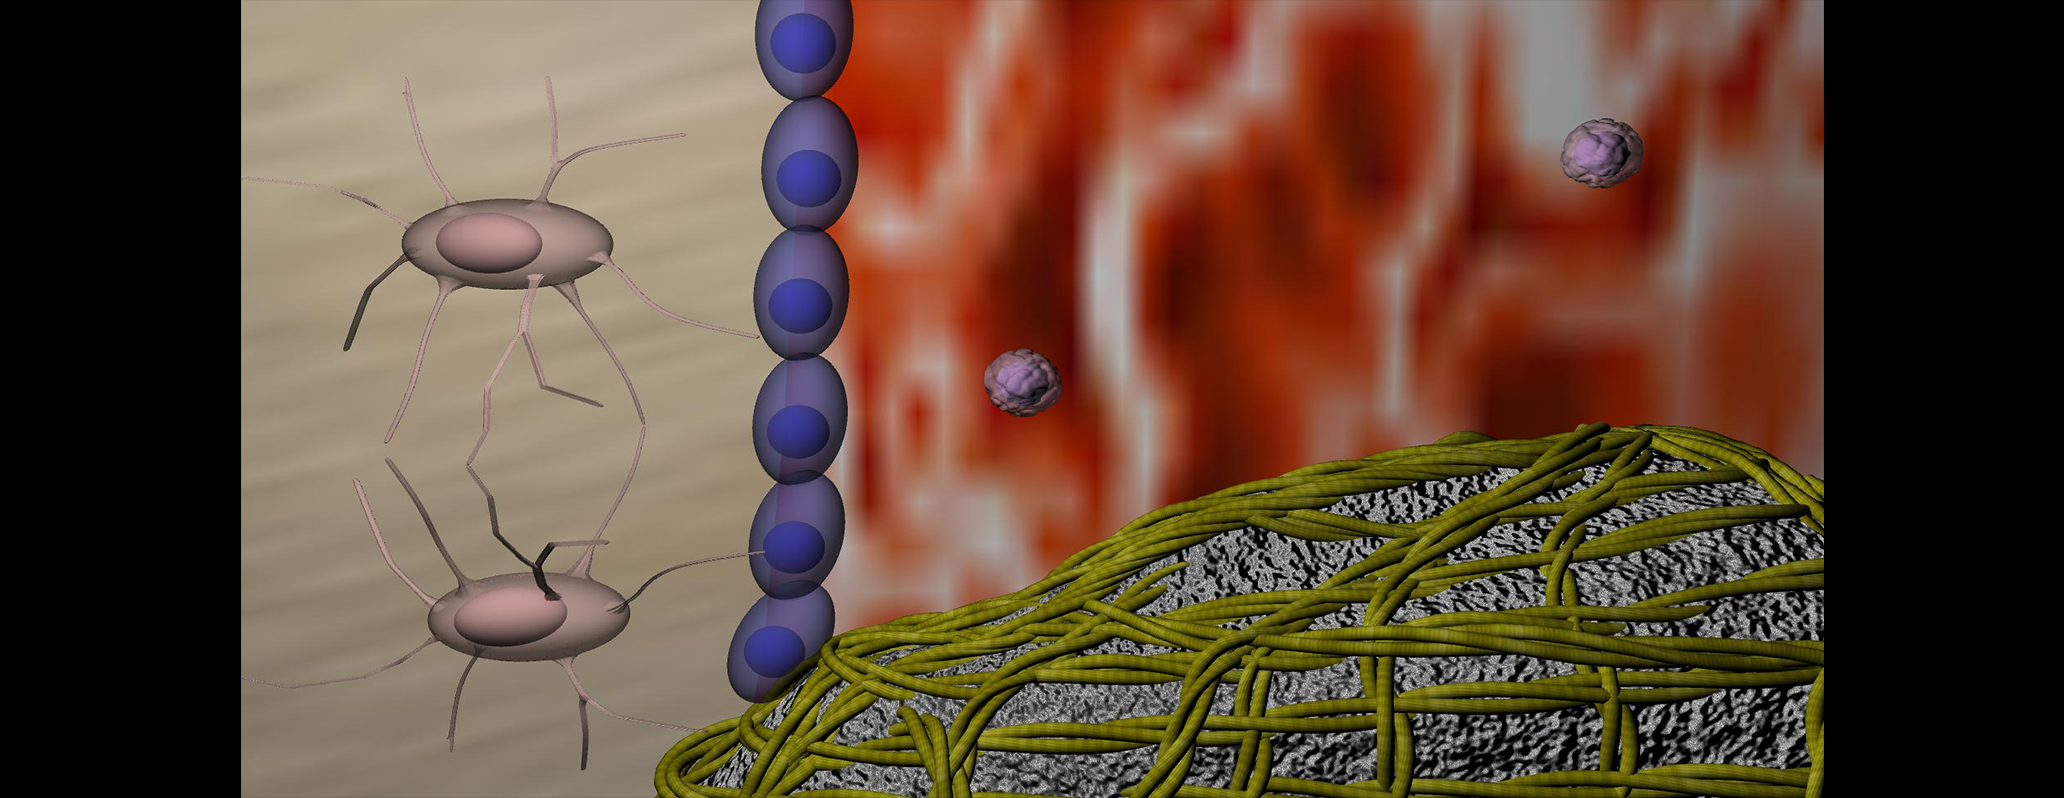 Primo scatto di una animazione che illustra i meccanismi cellulari di ricostruzione ossea